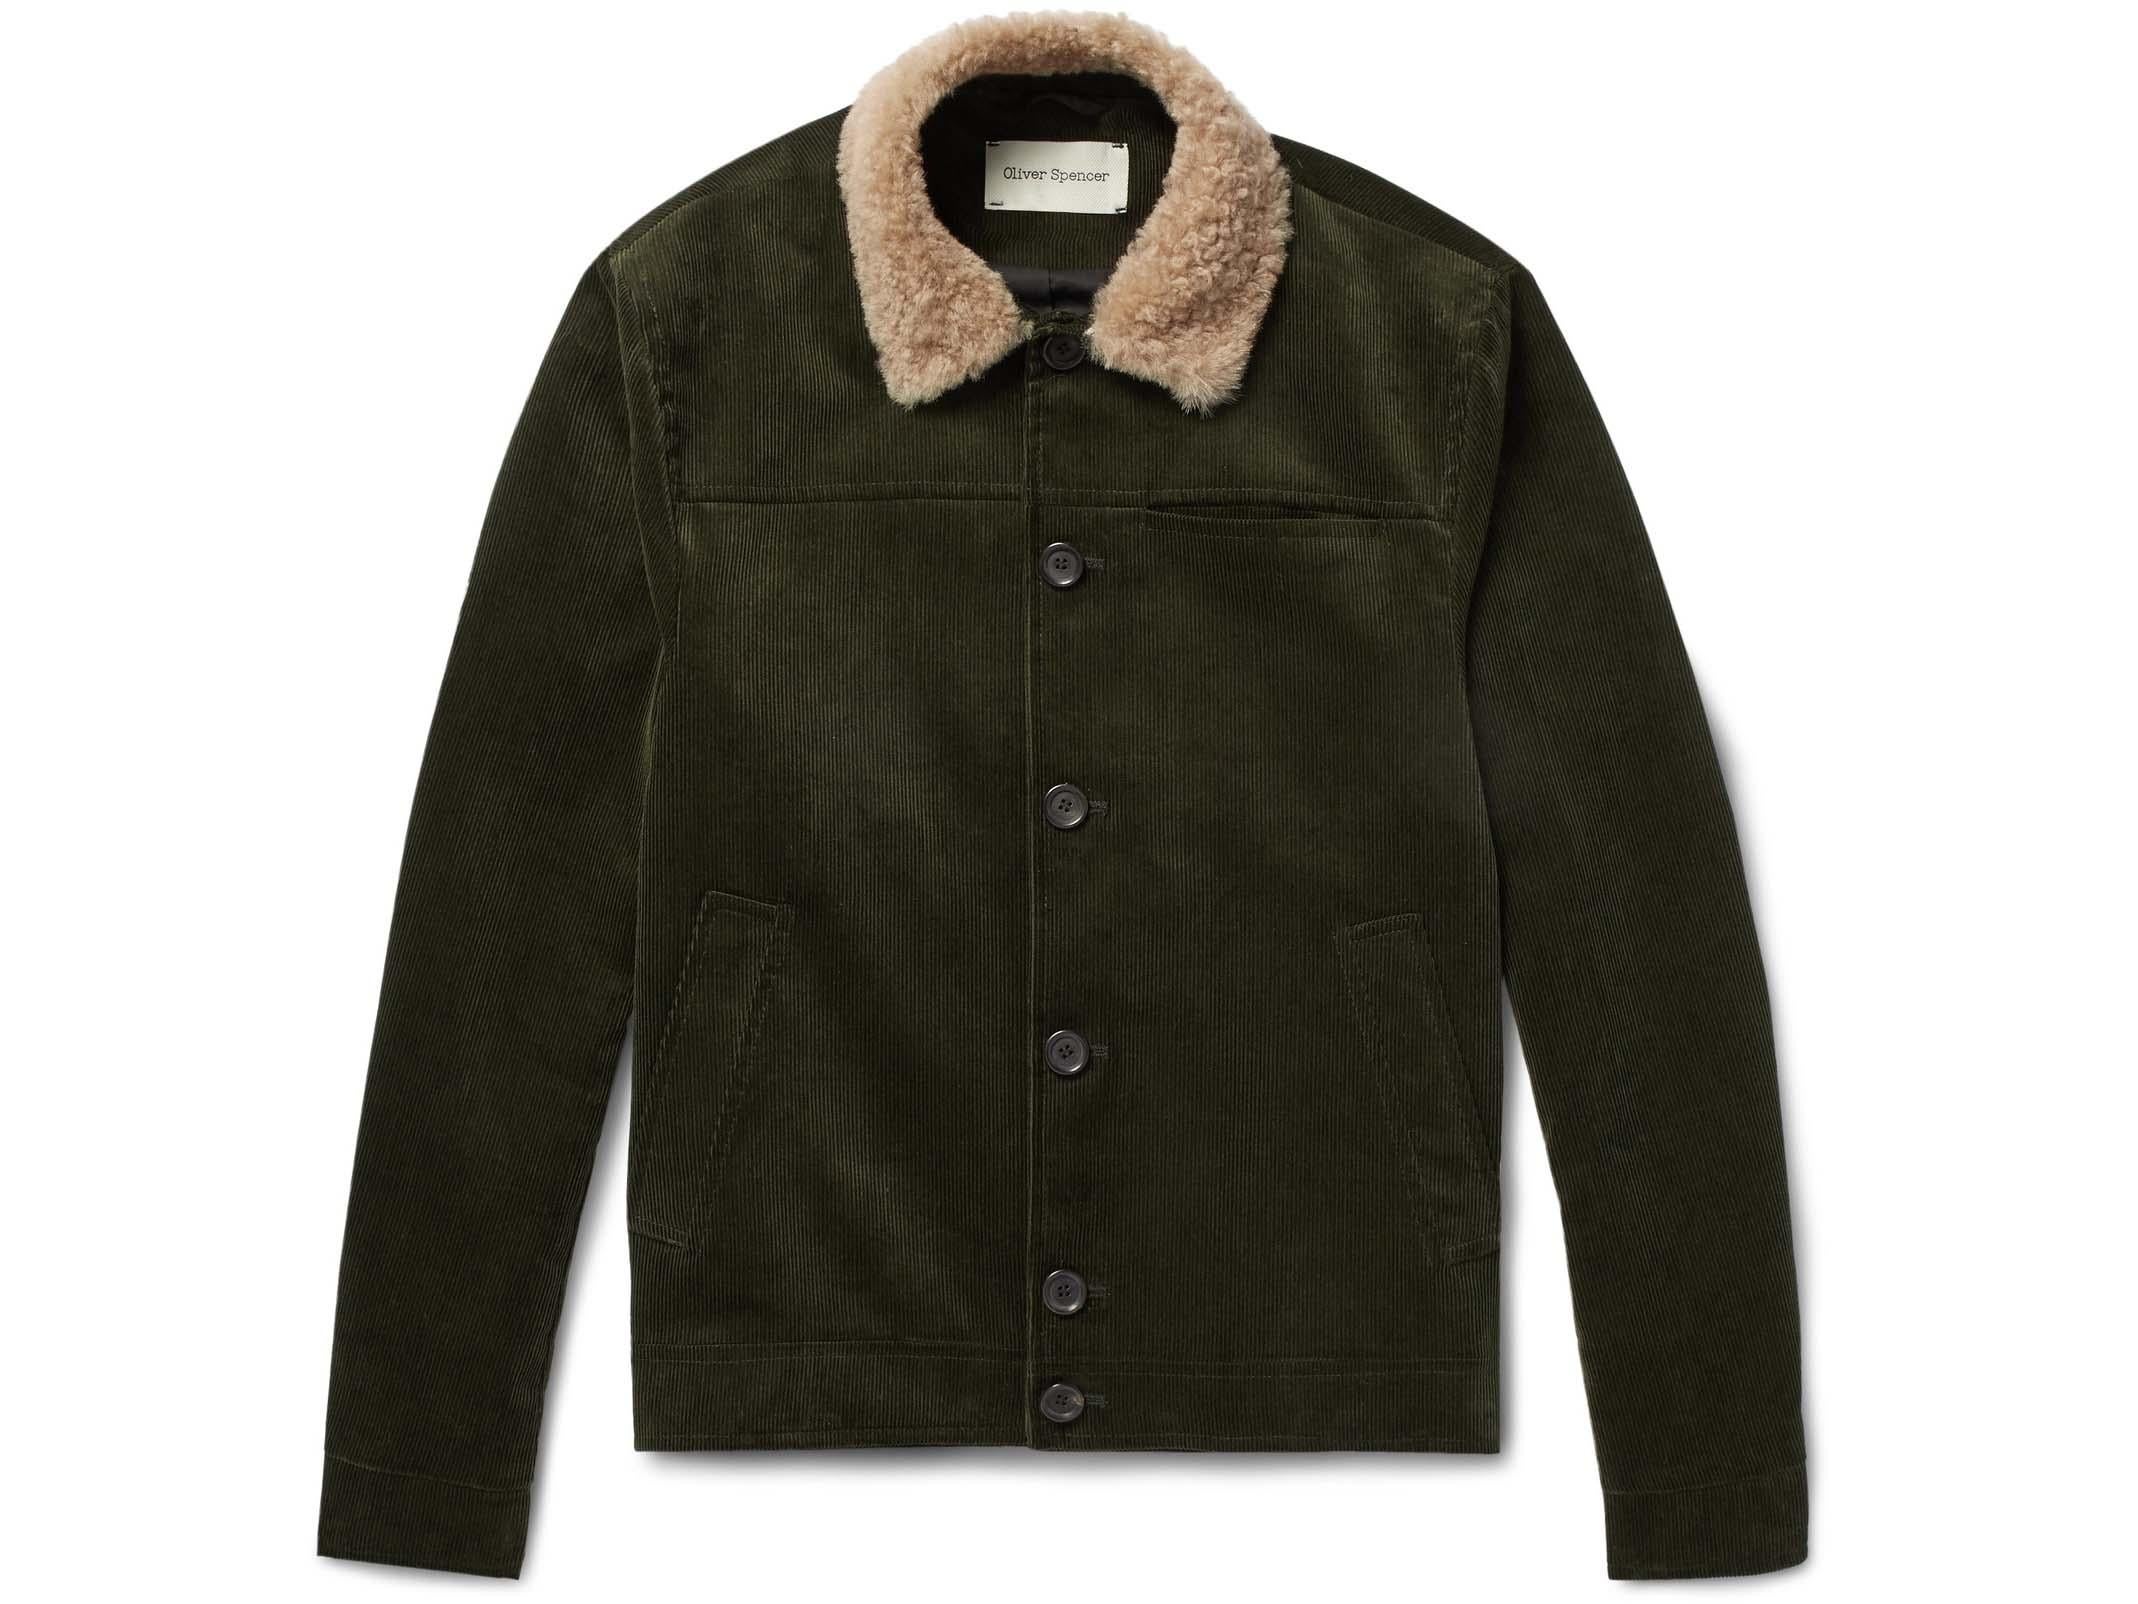 Oliver Spencer, Shearling Trimmed Cotton-Corduroy Jacket, £320, Net-a-Porter